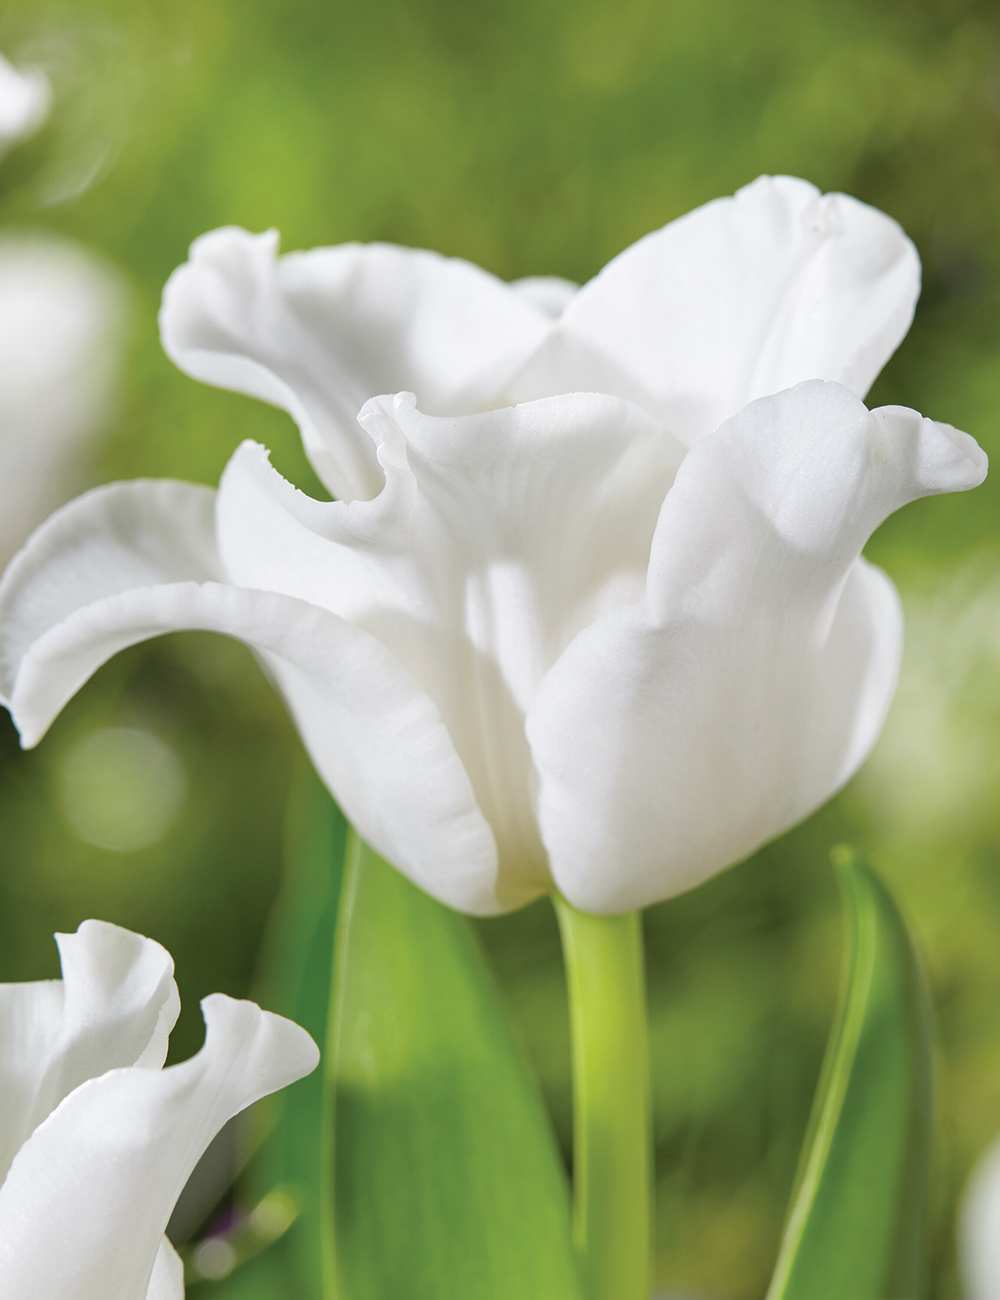 Coronet Tulip 'White Liberstar'